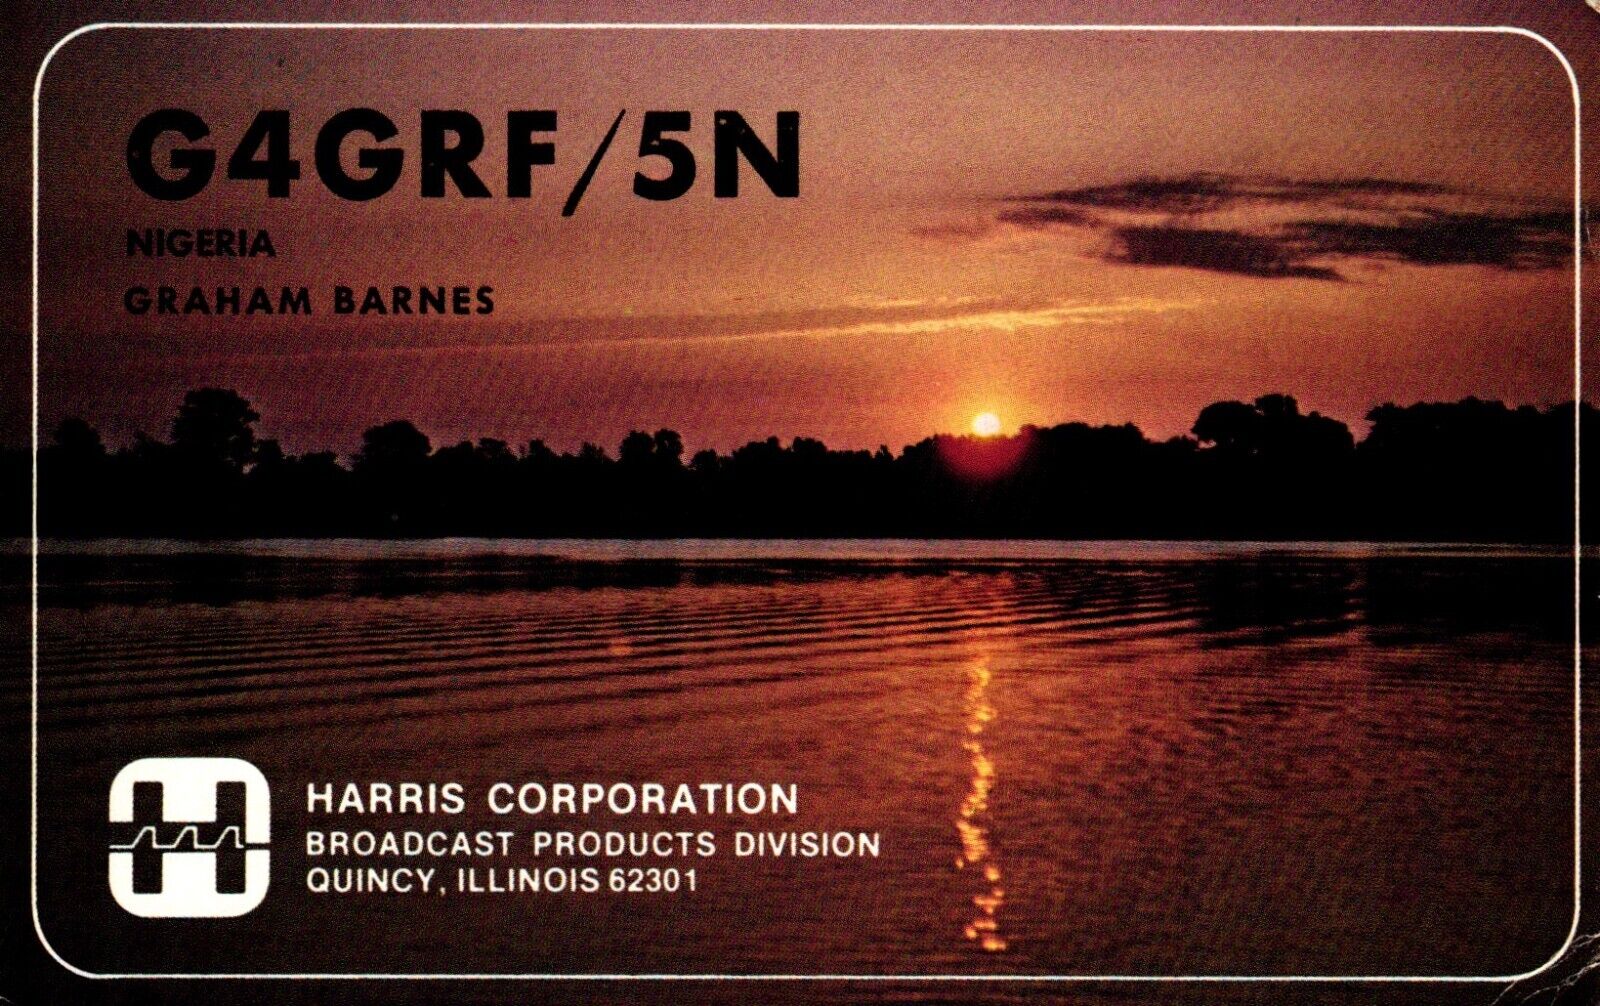 Harris Corporation Nigeria G4GRF/5N QSL Radio Postcard